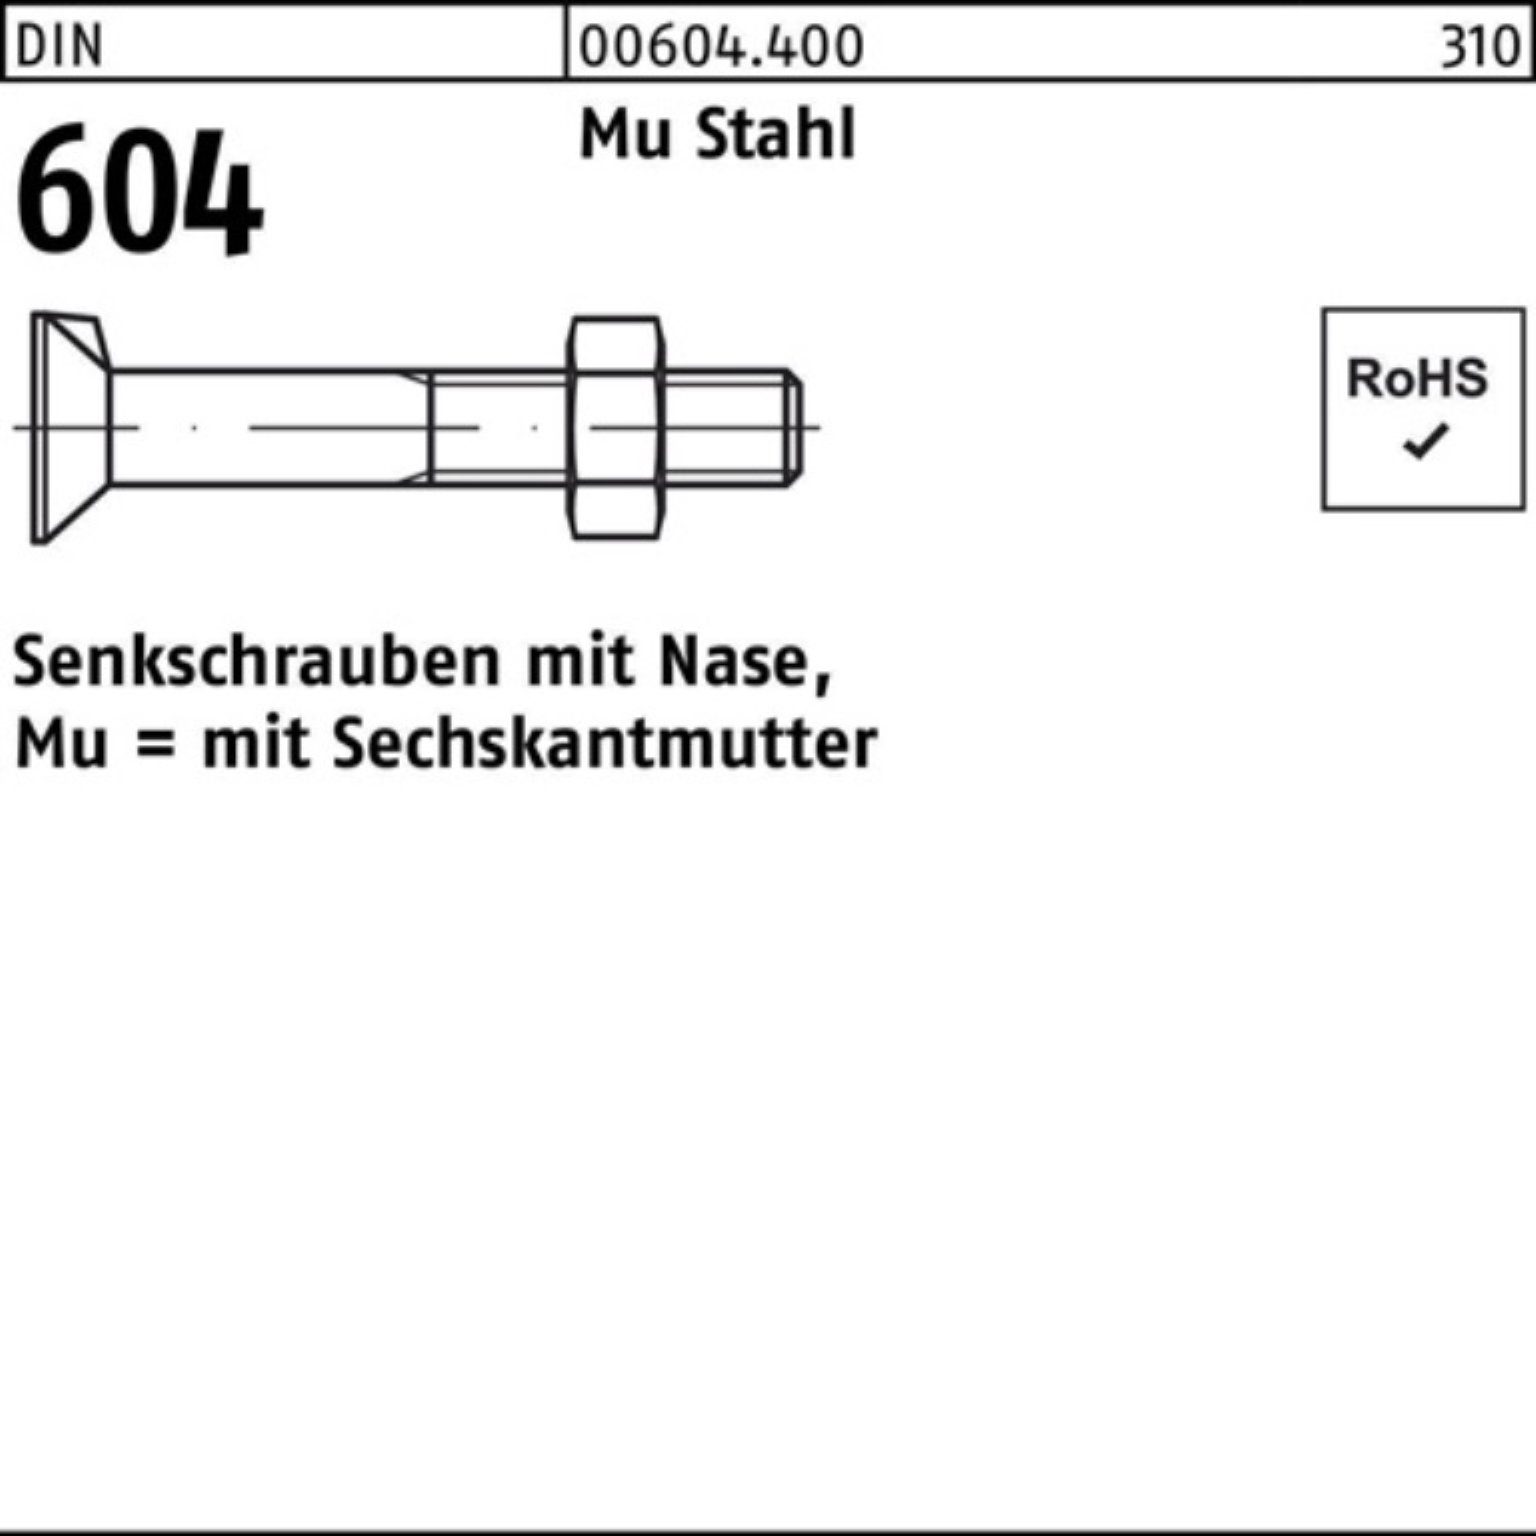 Reyher Senkschraube 200er Pack Senkschraube DIN 604 Nase/6-ktmutter M6x 35 Mu Stahl 4.6 20